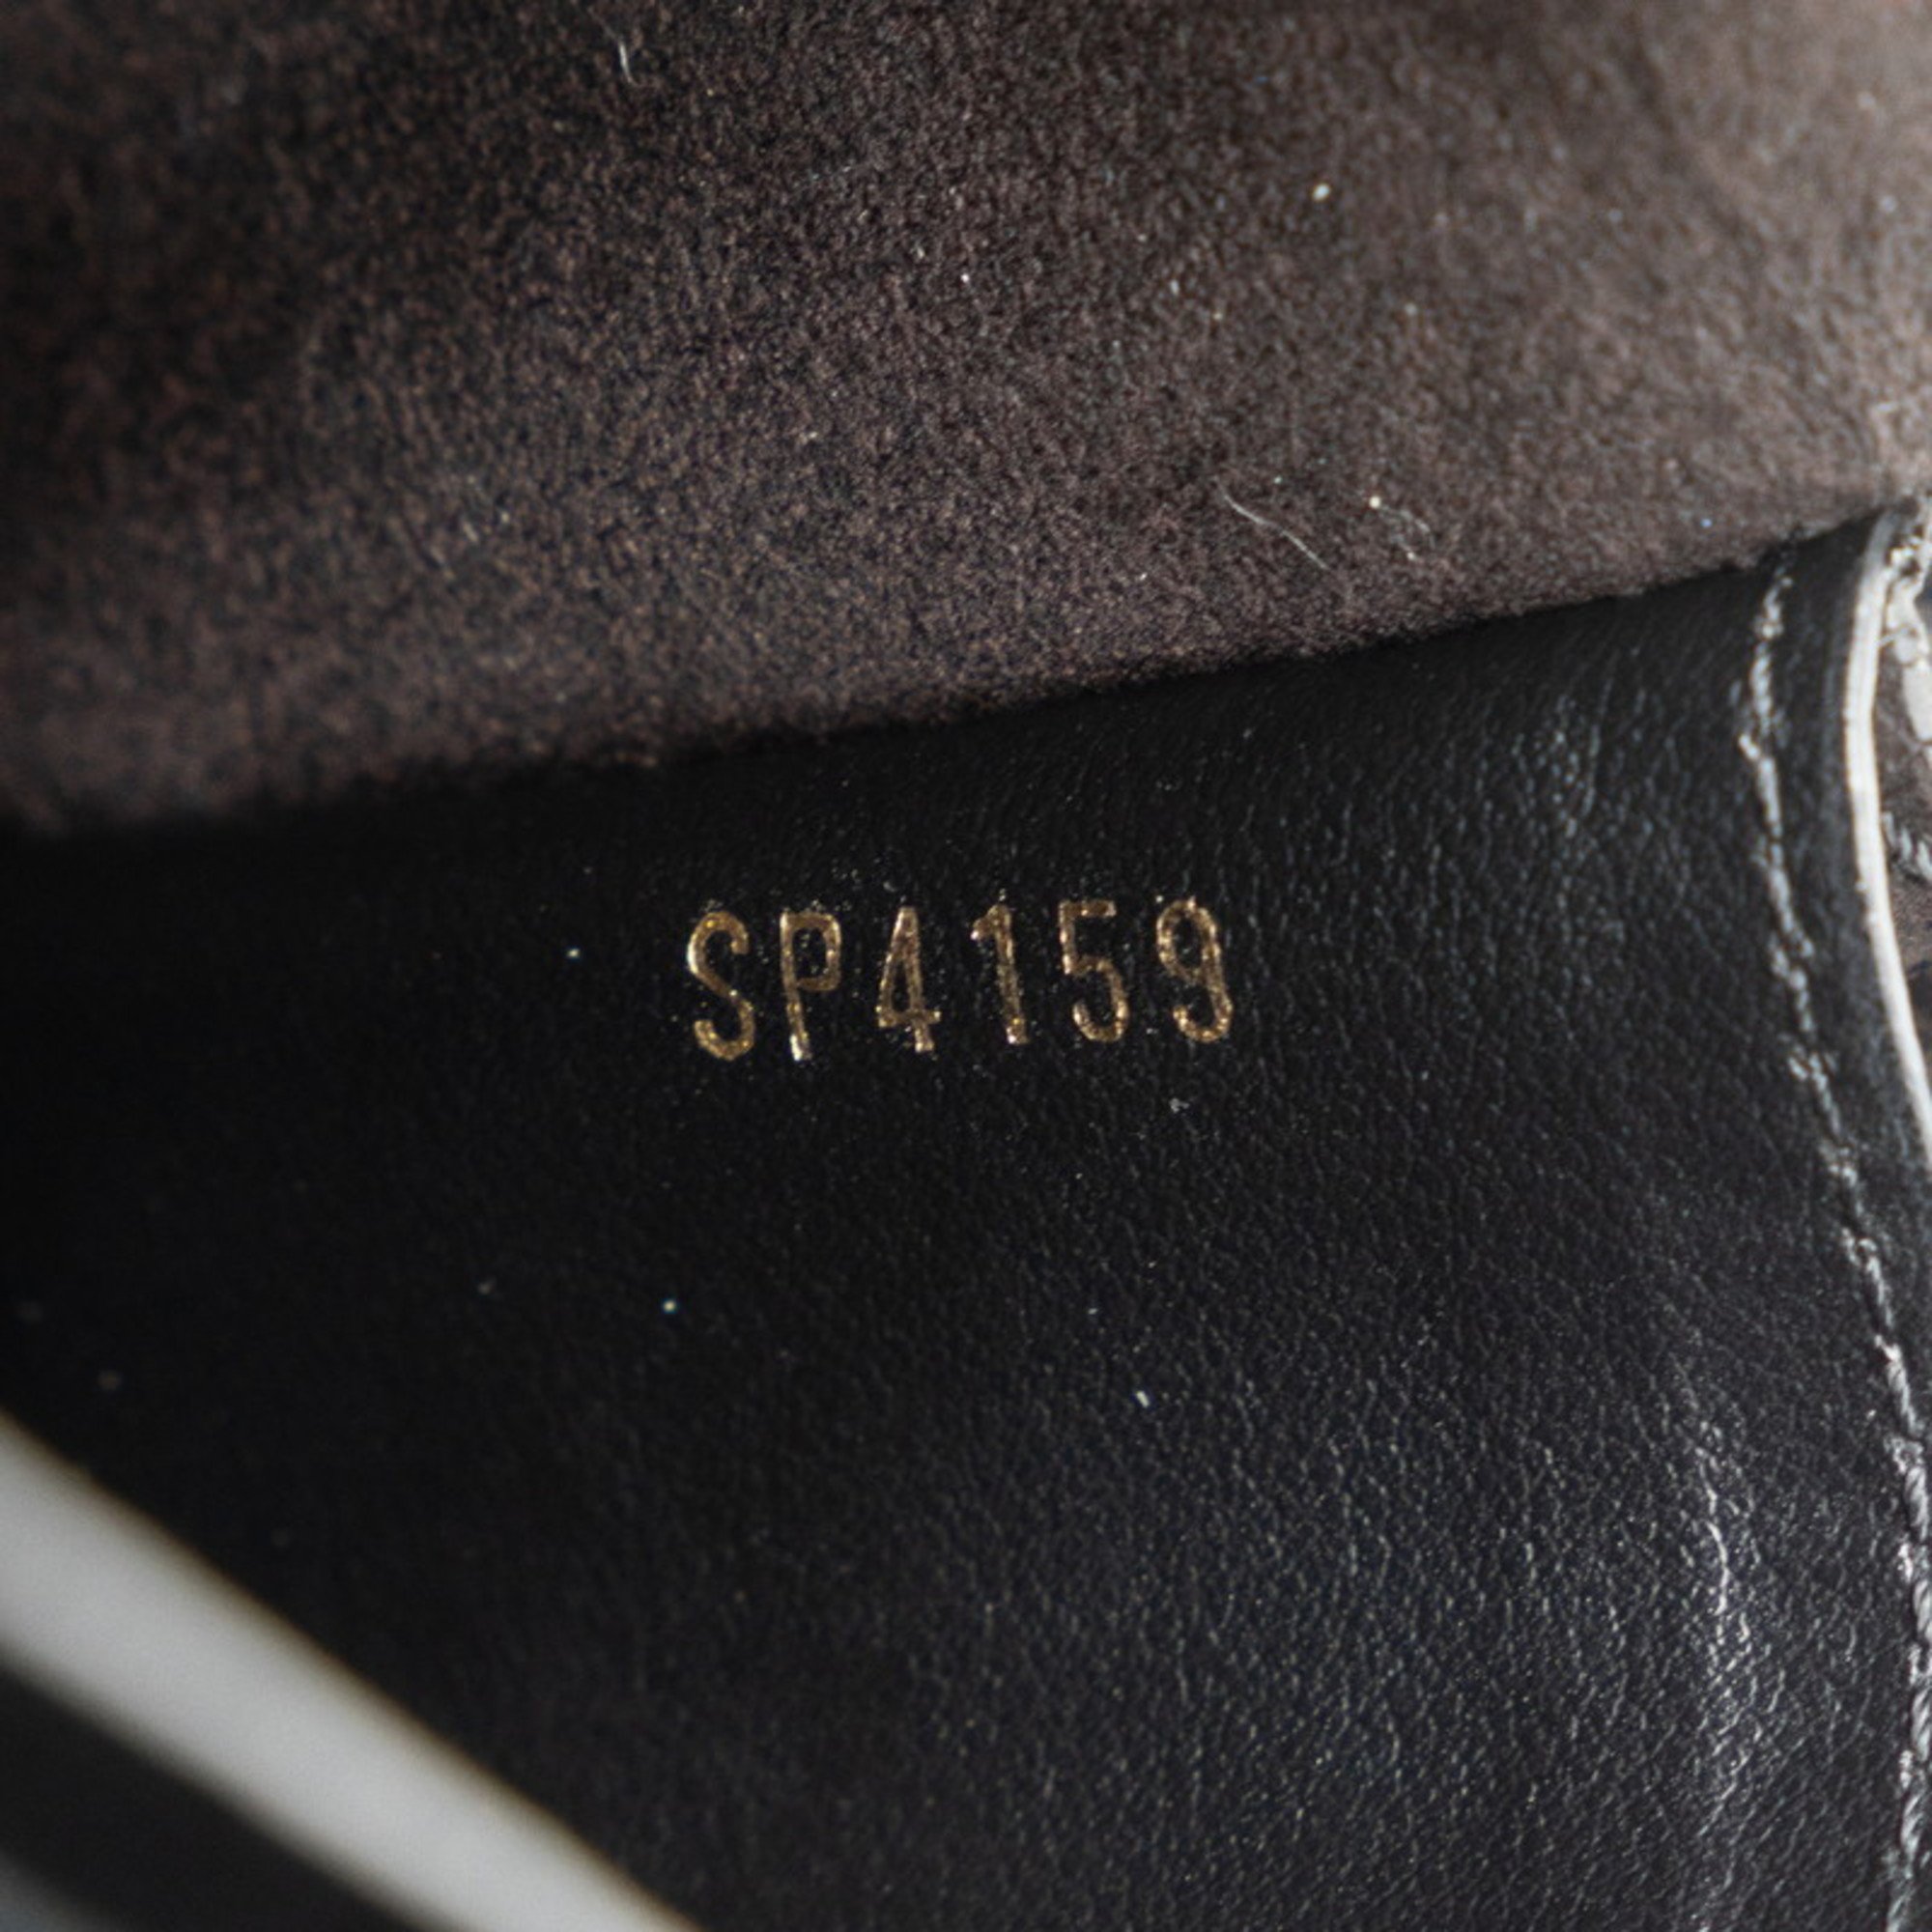 Louis Vuitton Monogram Empreinte Portefeuille Vavin Chain Shoulder Wallet M67839 Noir Black Calf Leather Women's LOUIS VUITTON